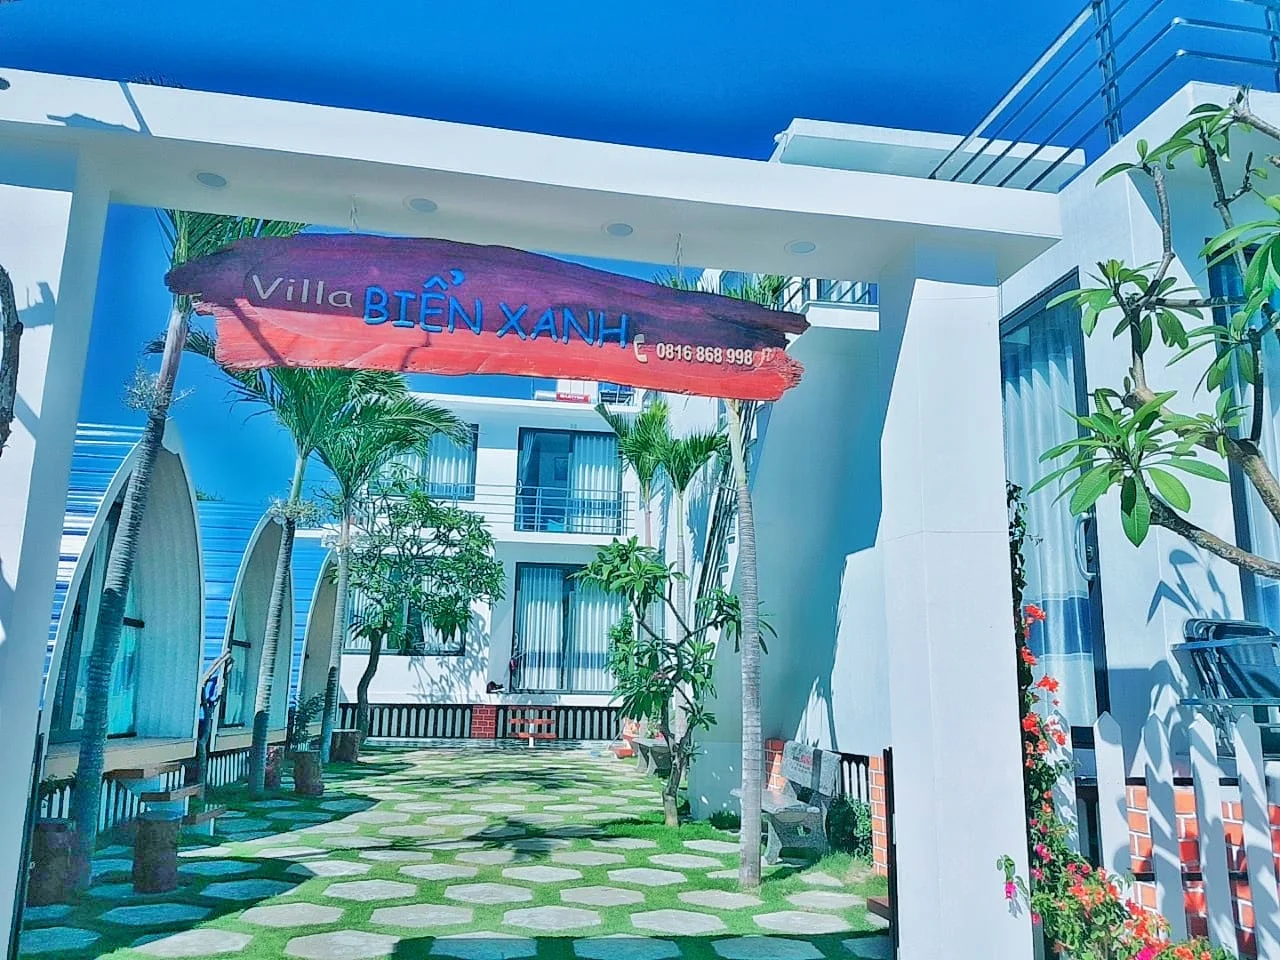 Villa Biển Xanh Đảo Phú Quý Bình Thuận